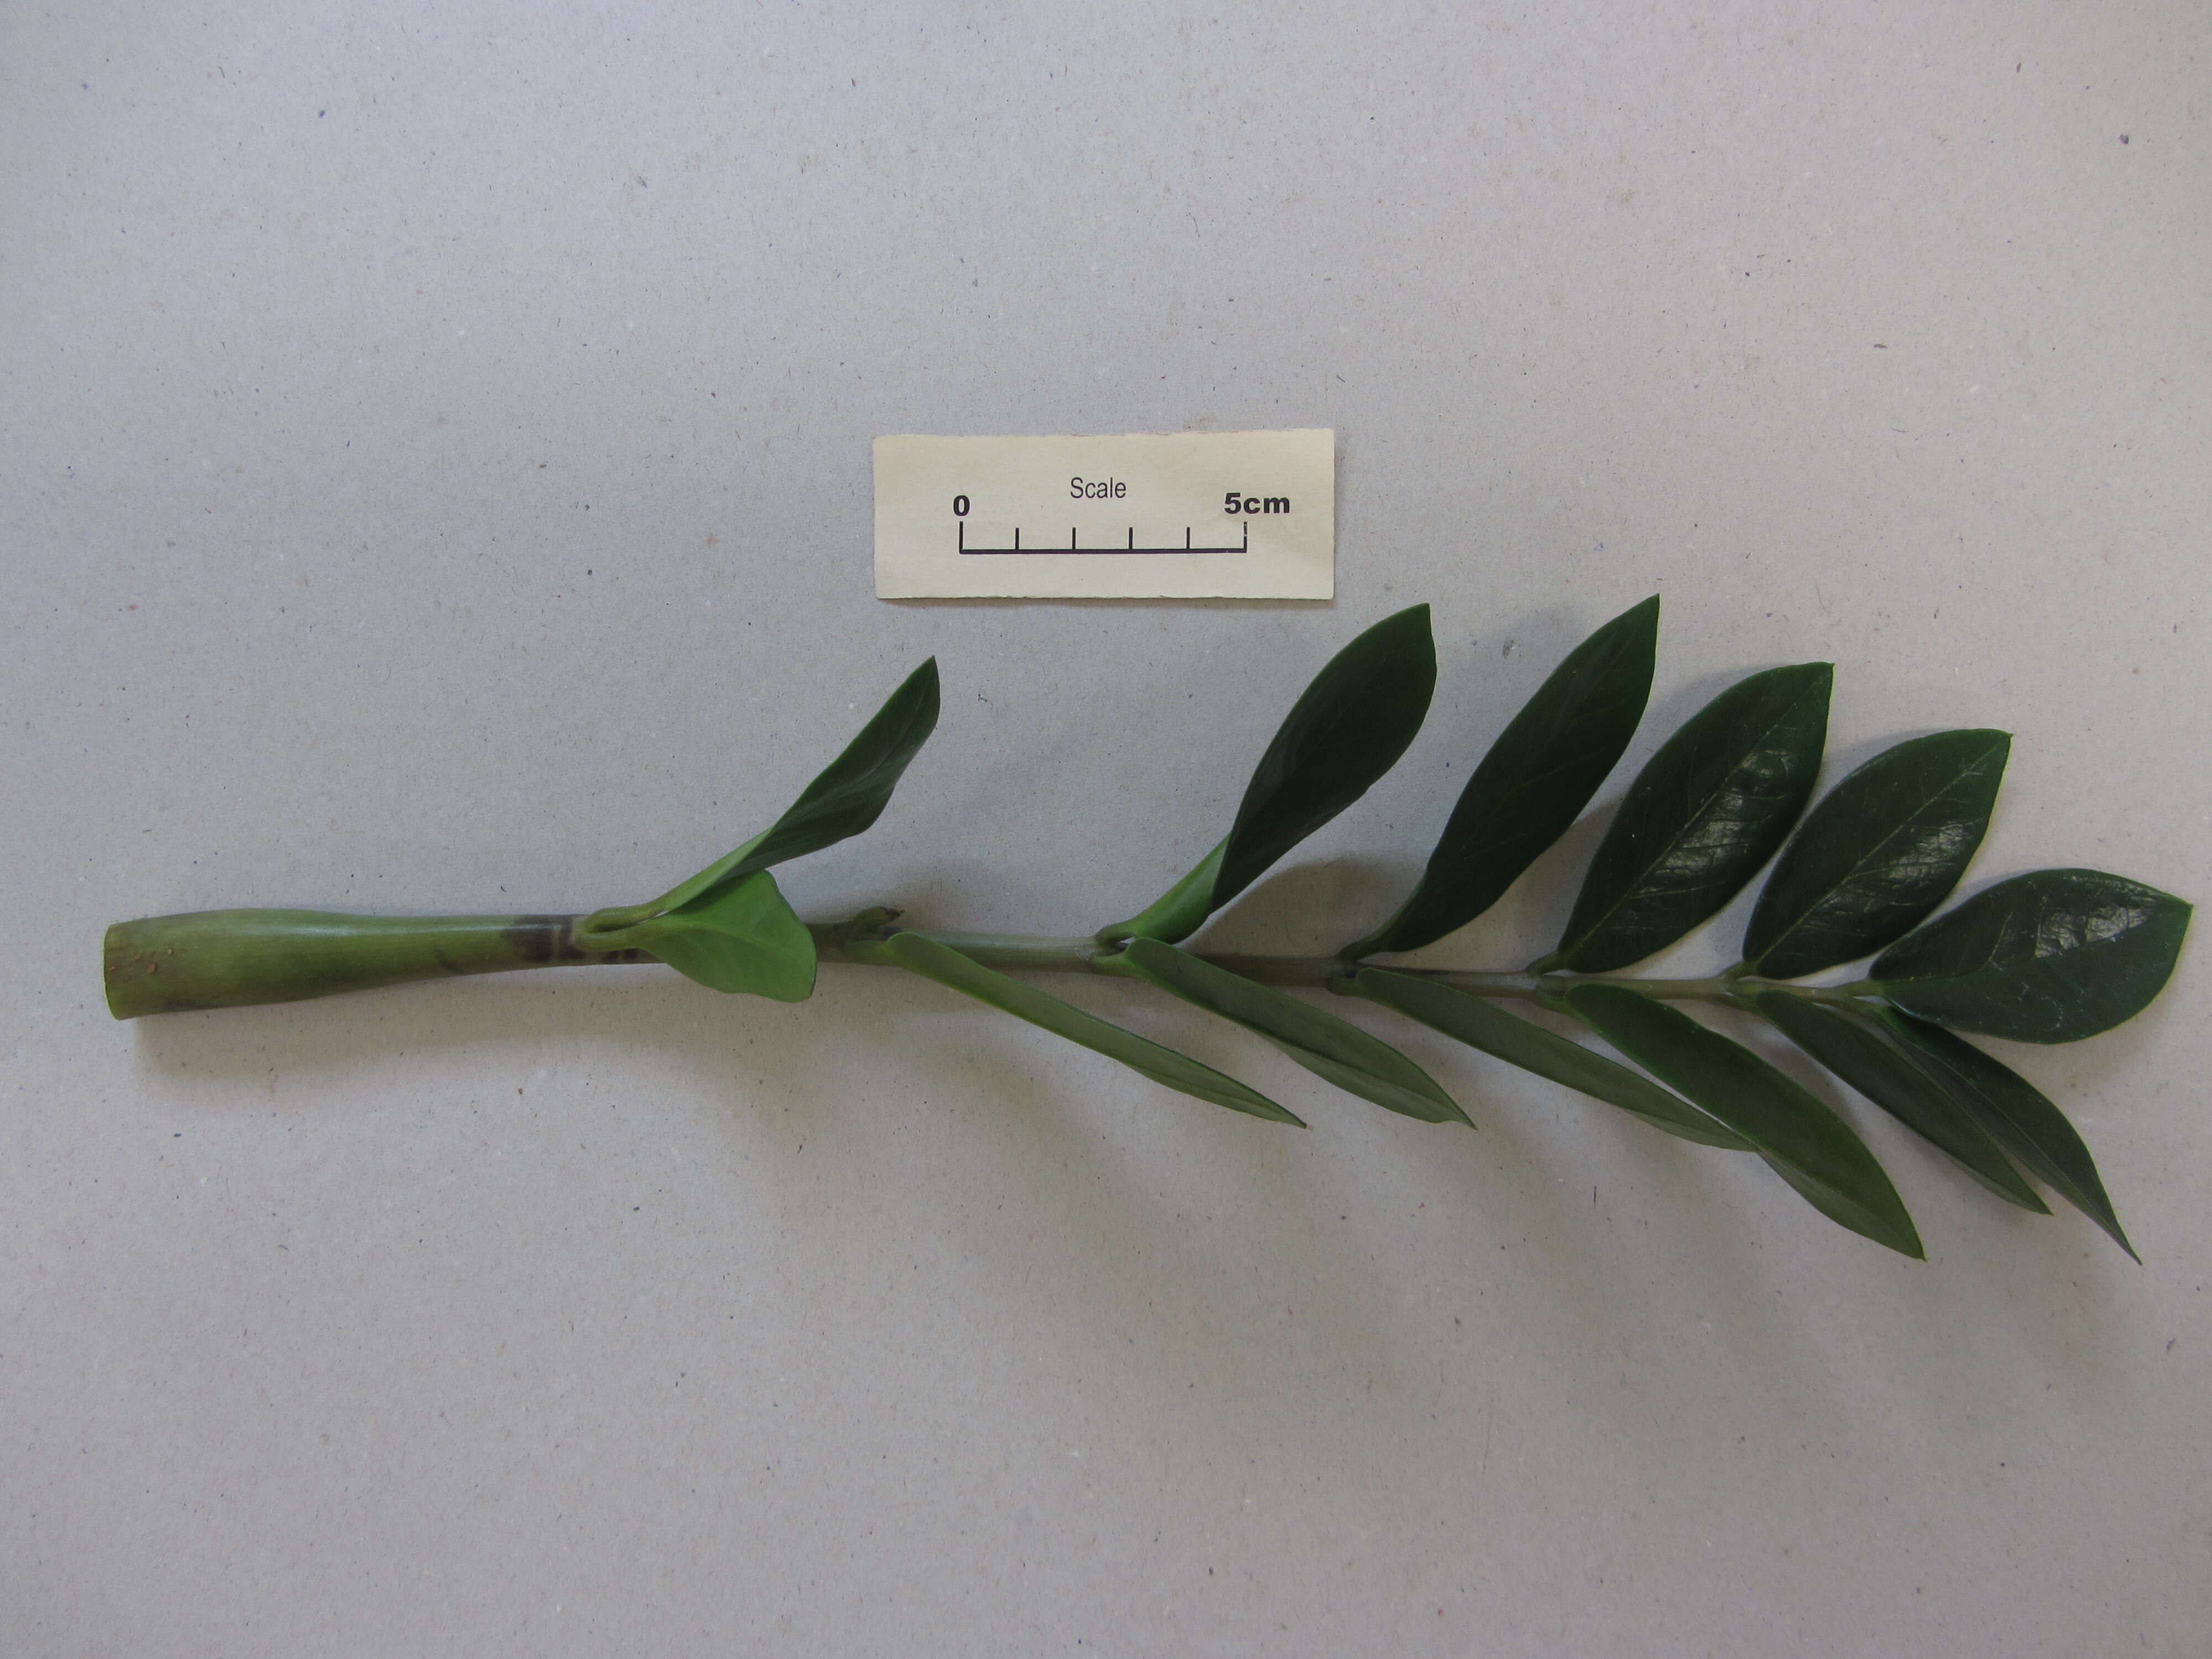 Image de Zamioculcas zamiifolia (G. Lodd.) Engl.